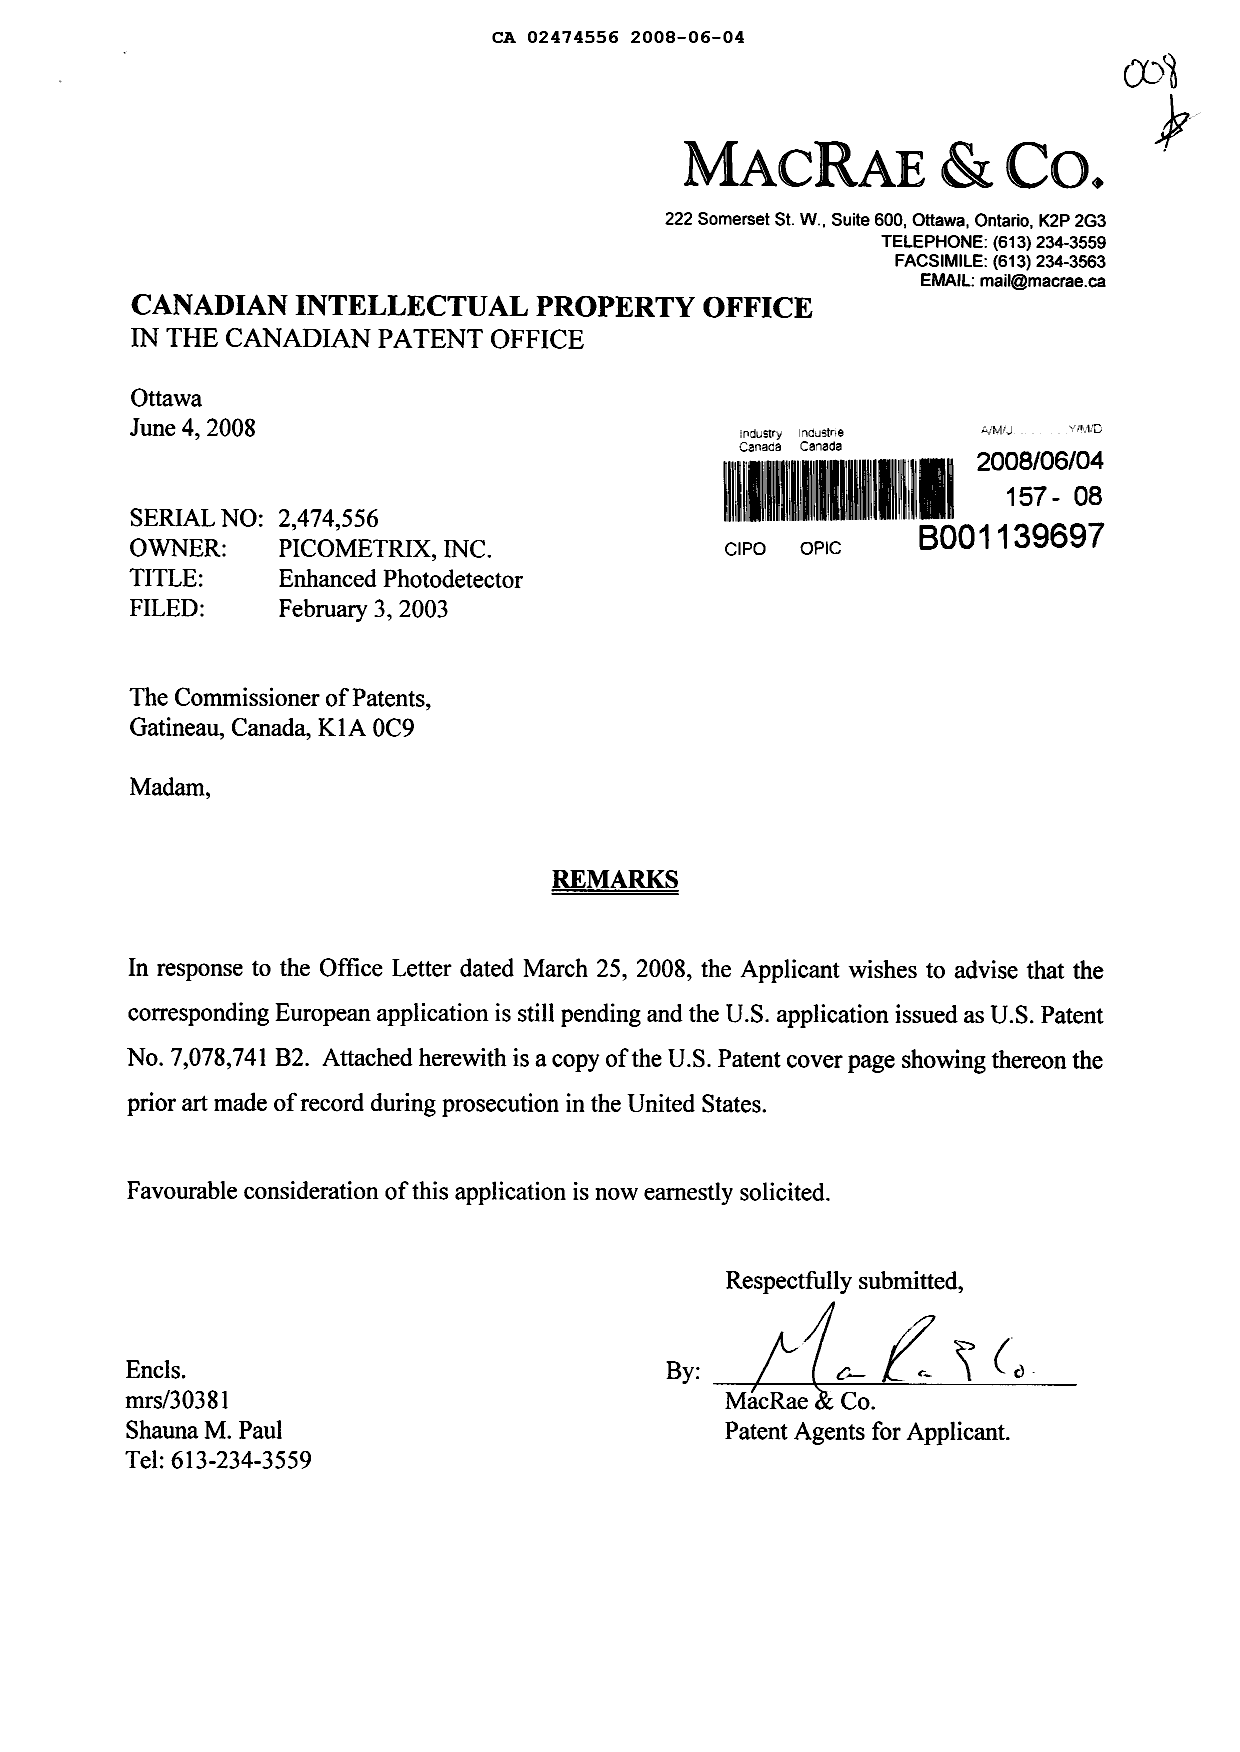 Document de brevet canadien 2474556. Poursuite-Amendment 20080604. Image 1 de 1